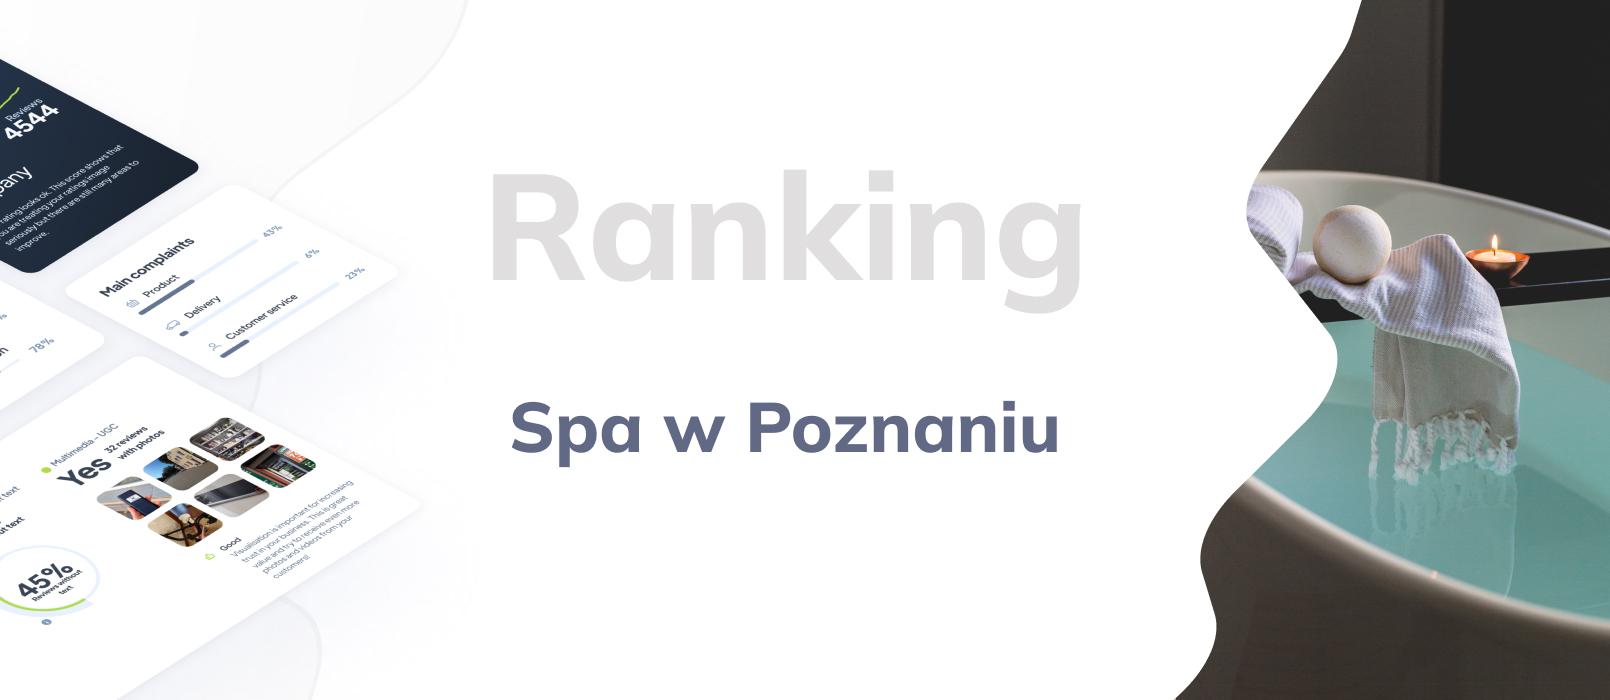 Spa w Poznaniu - ranking TOP 10